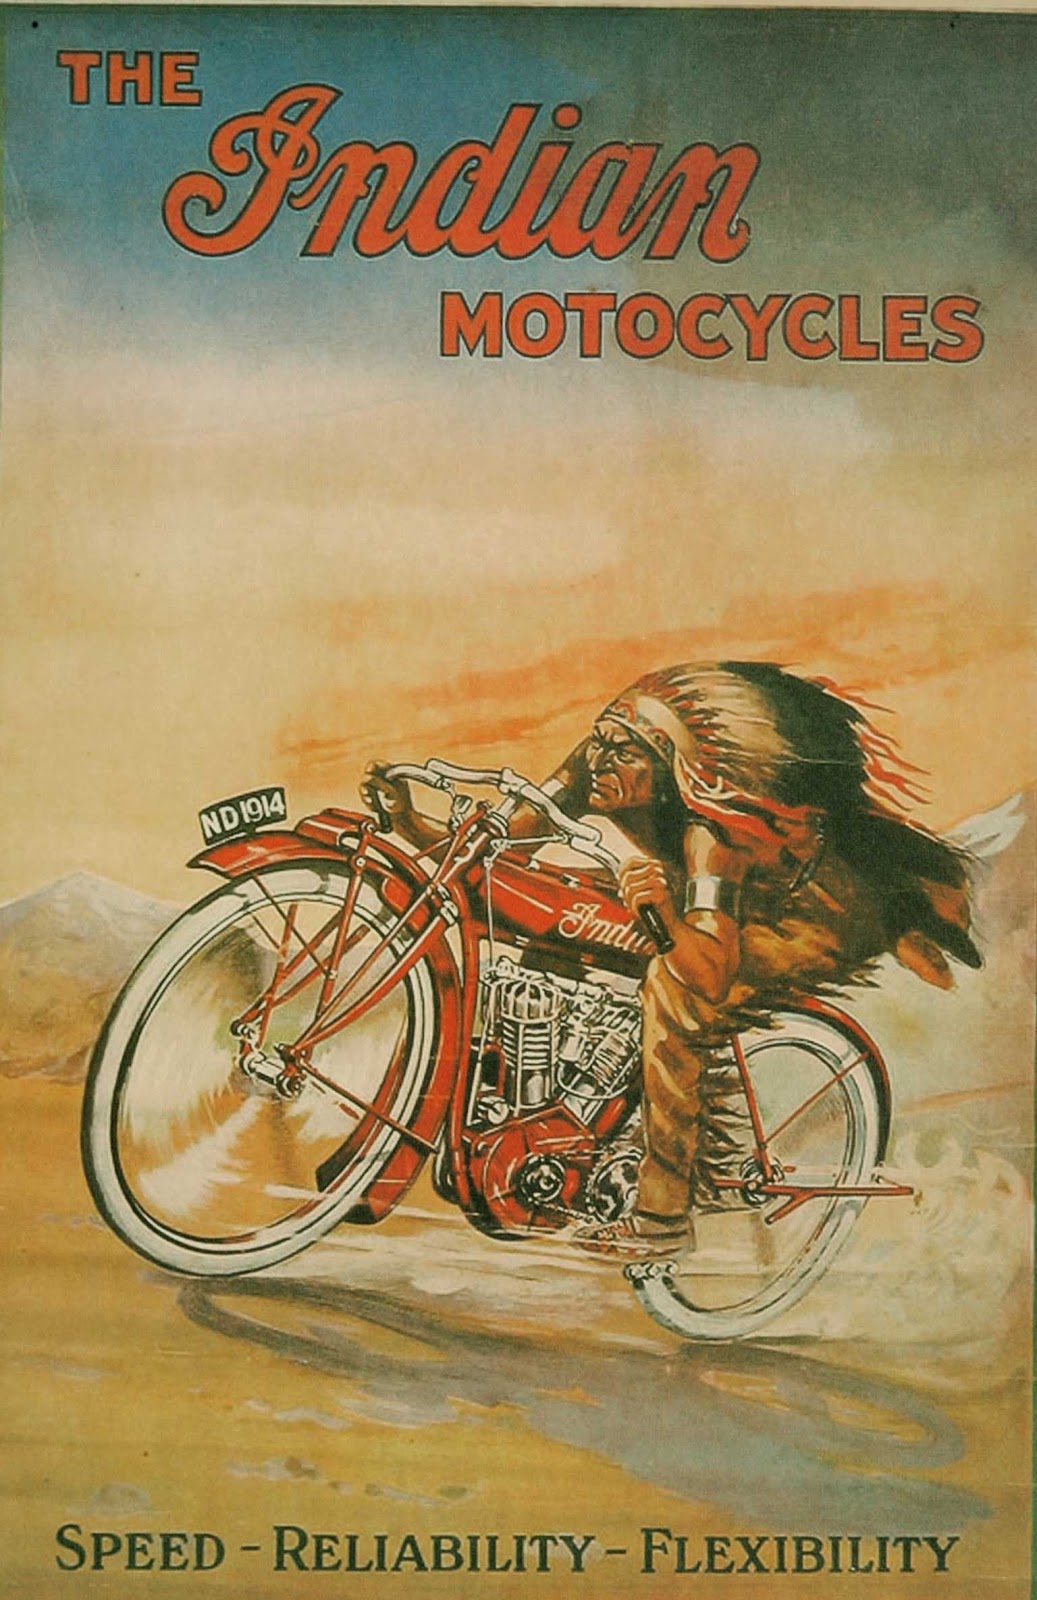 Vintage Motorcycle Advertisements 55